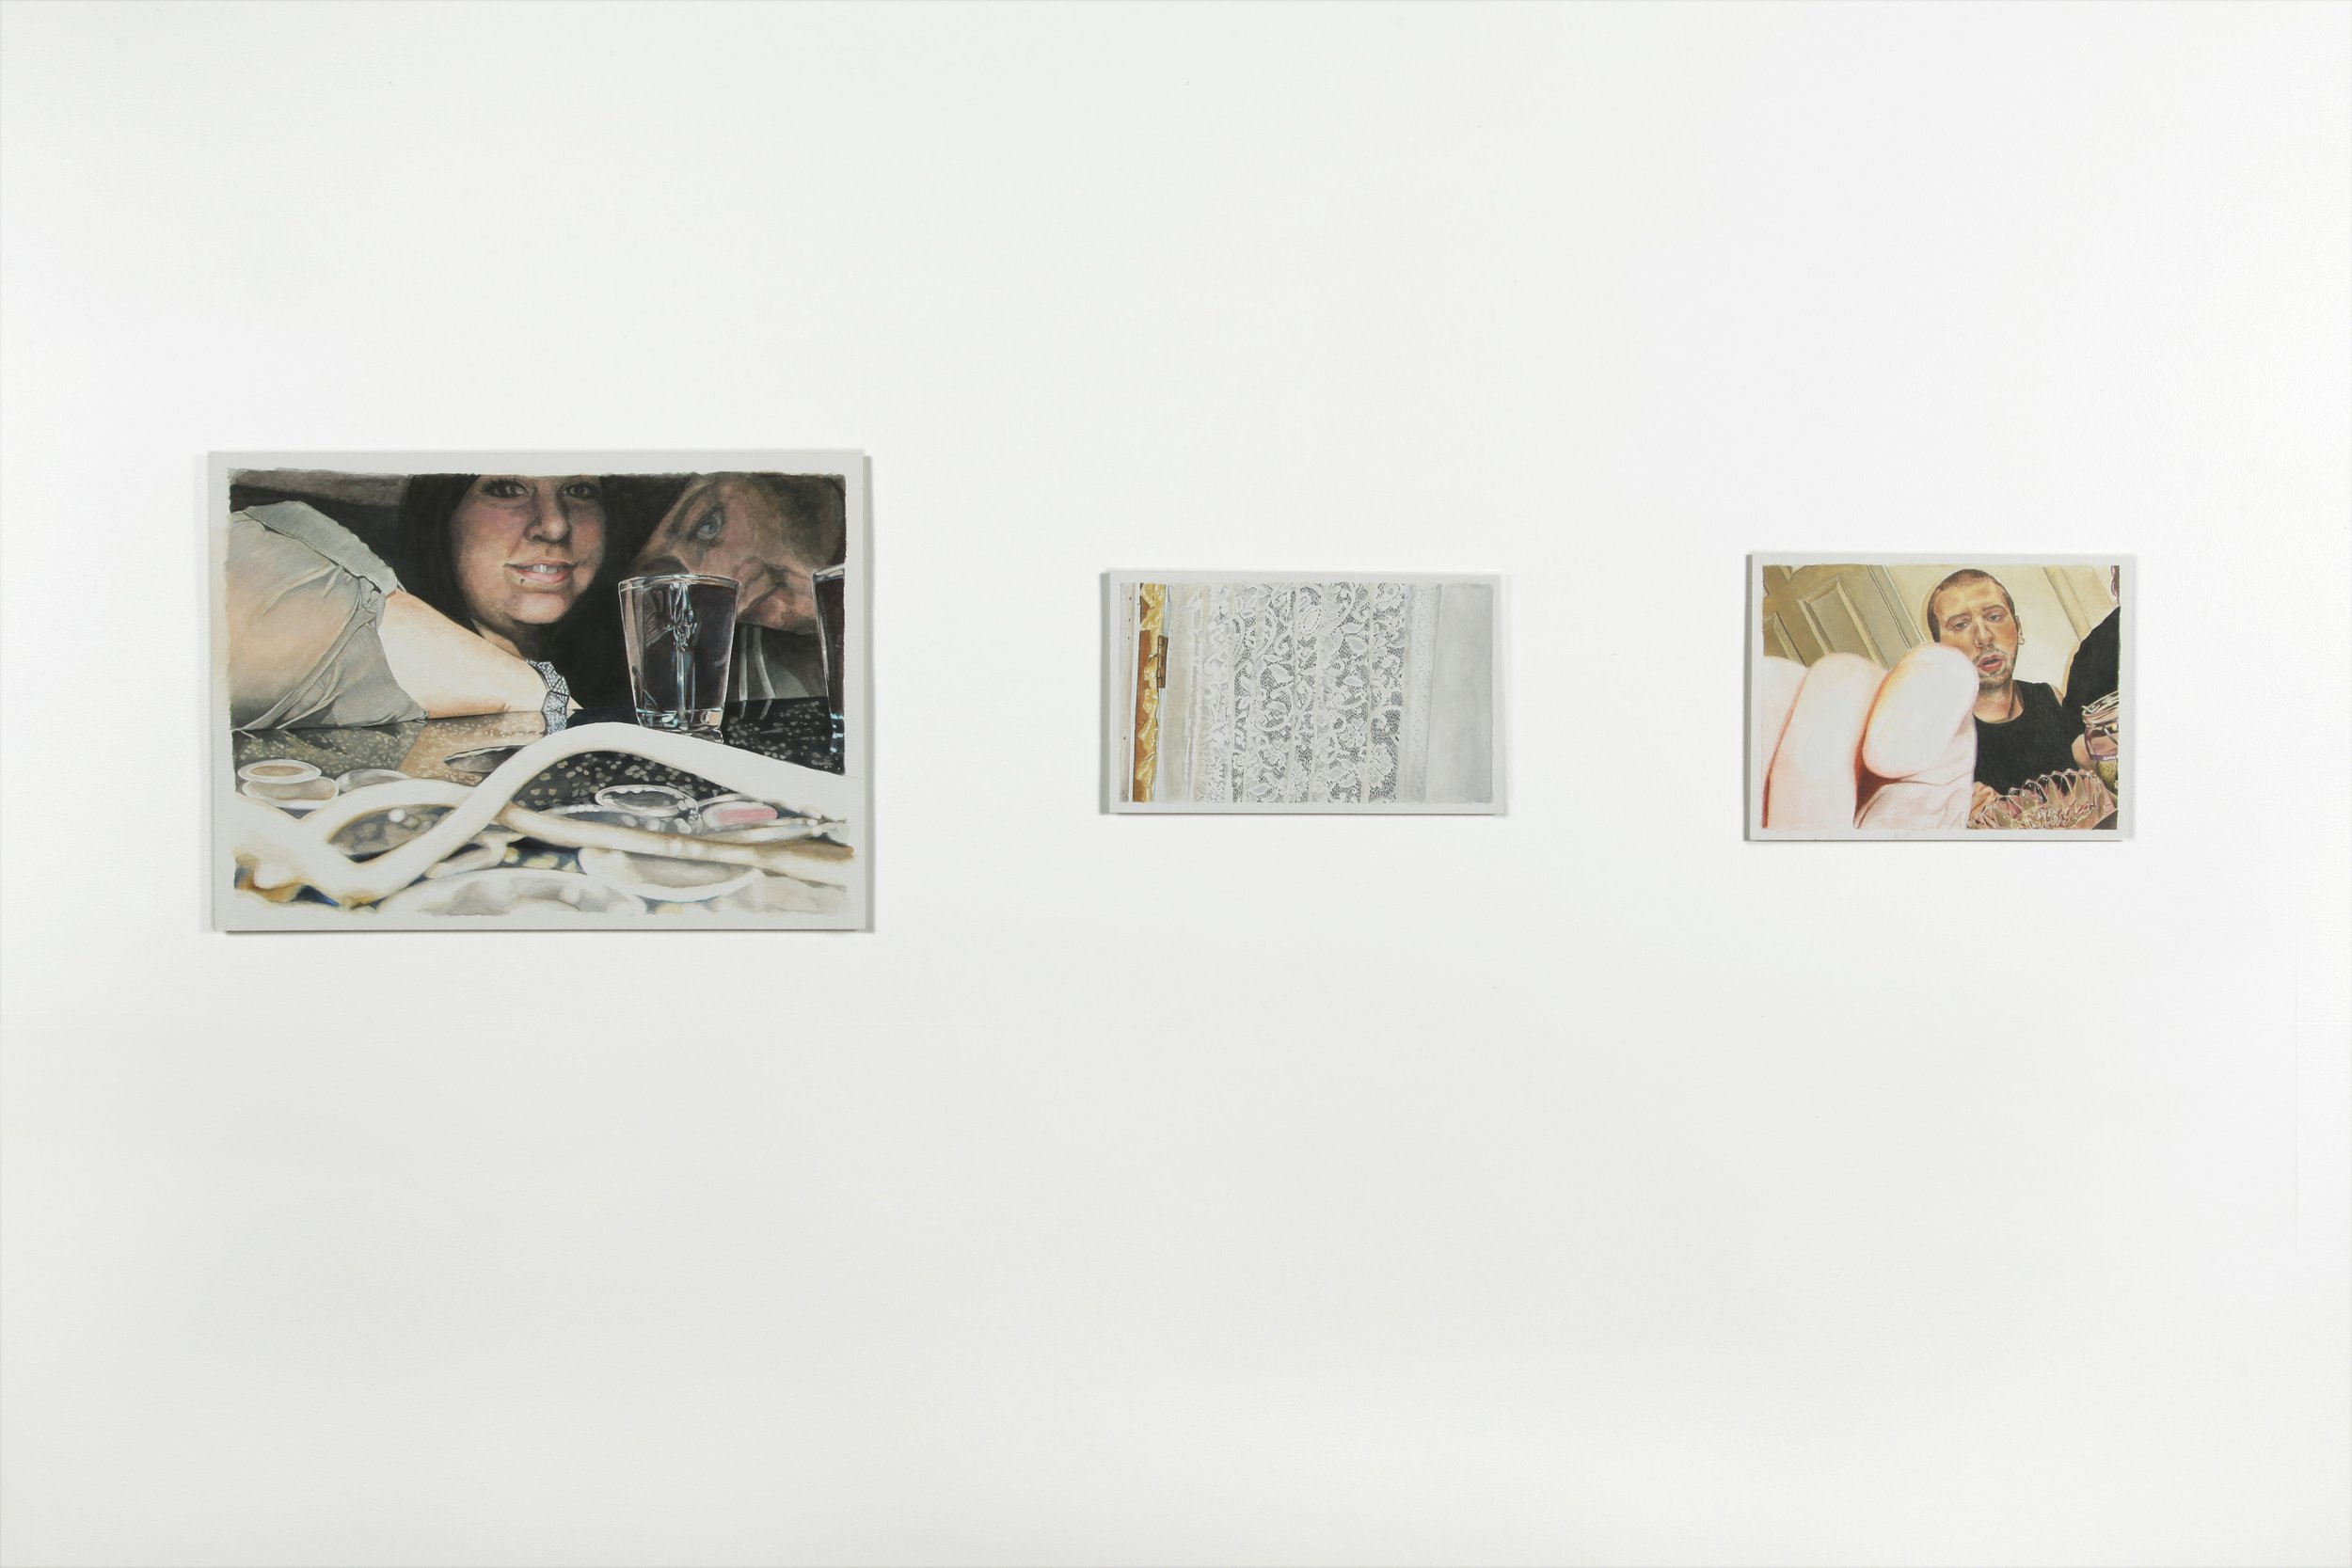   Dimanche ,  Johannie Séguin , aquarelle sur papier, 3 pièces; 11 x 15, 5 ½ x 9, 16 ½ x 8 ½ pouces, 2014  Crédit photo : Annie Boudreau 